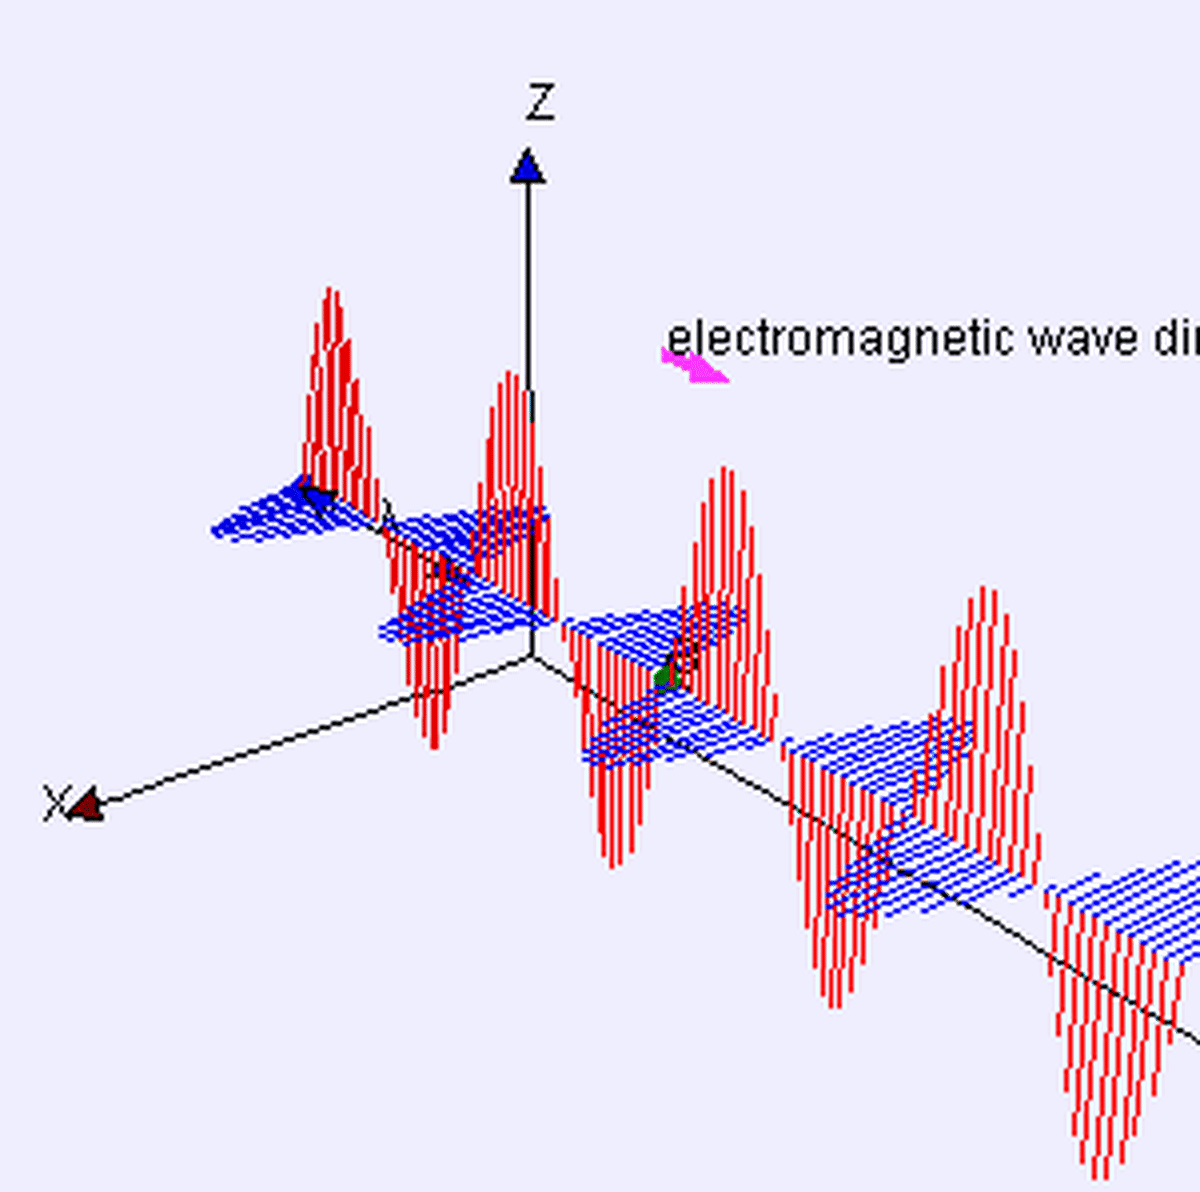 Hem manyetik hem de elektrik alanlarını gösteren elektromanyetik dalga.